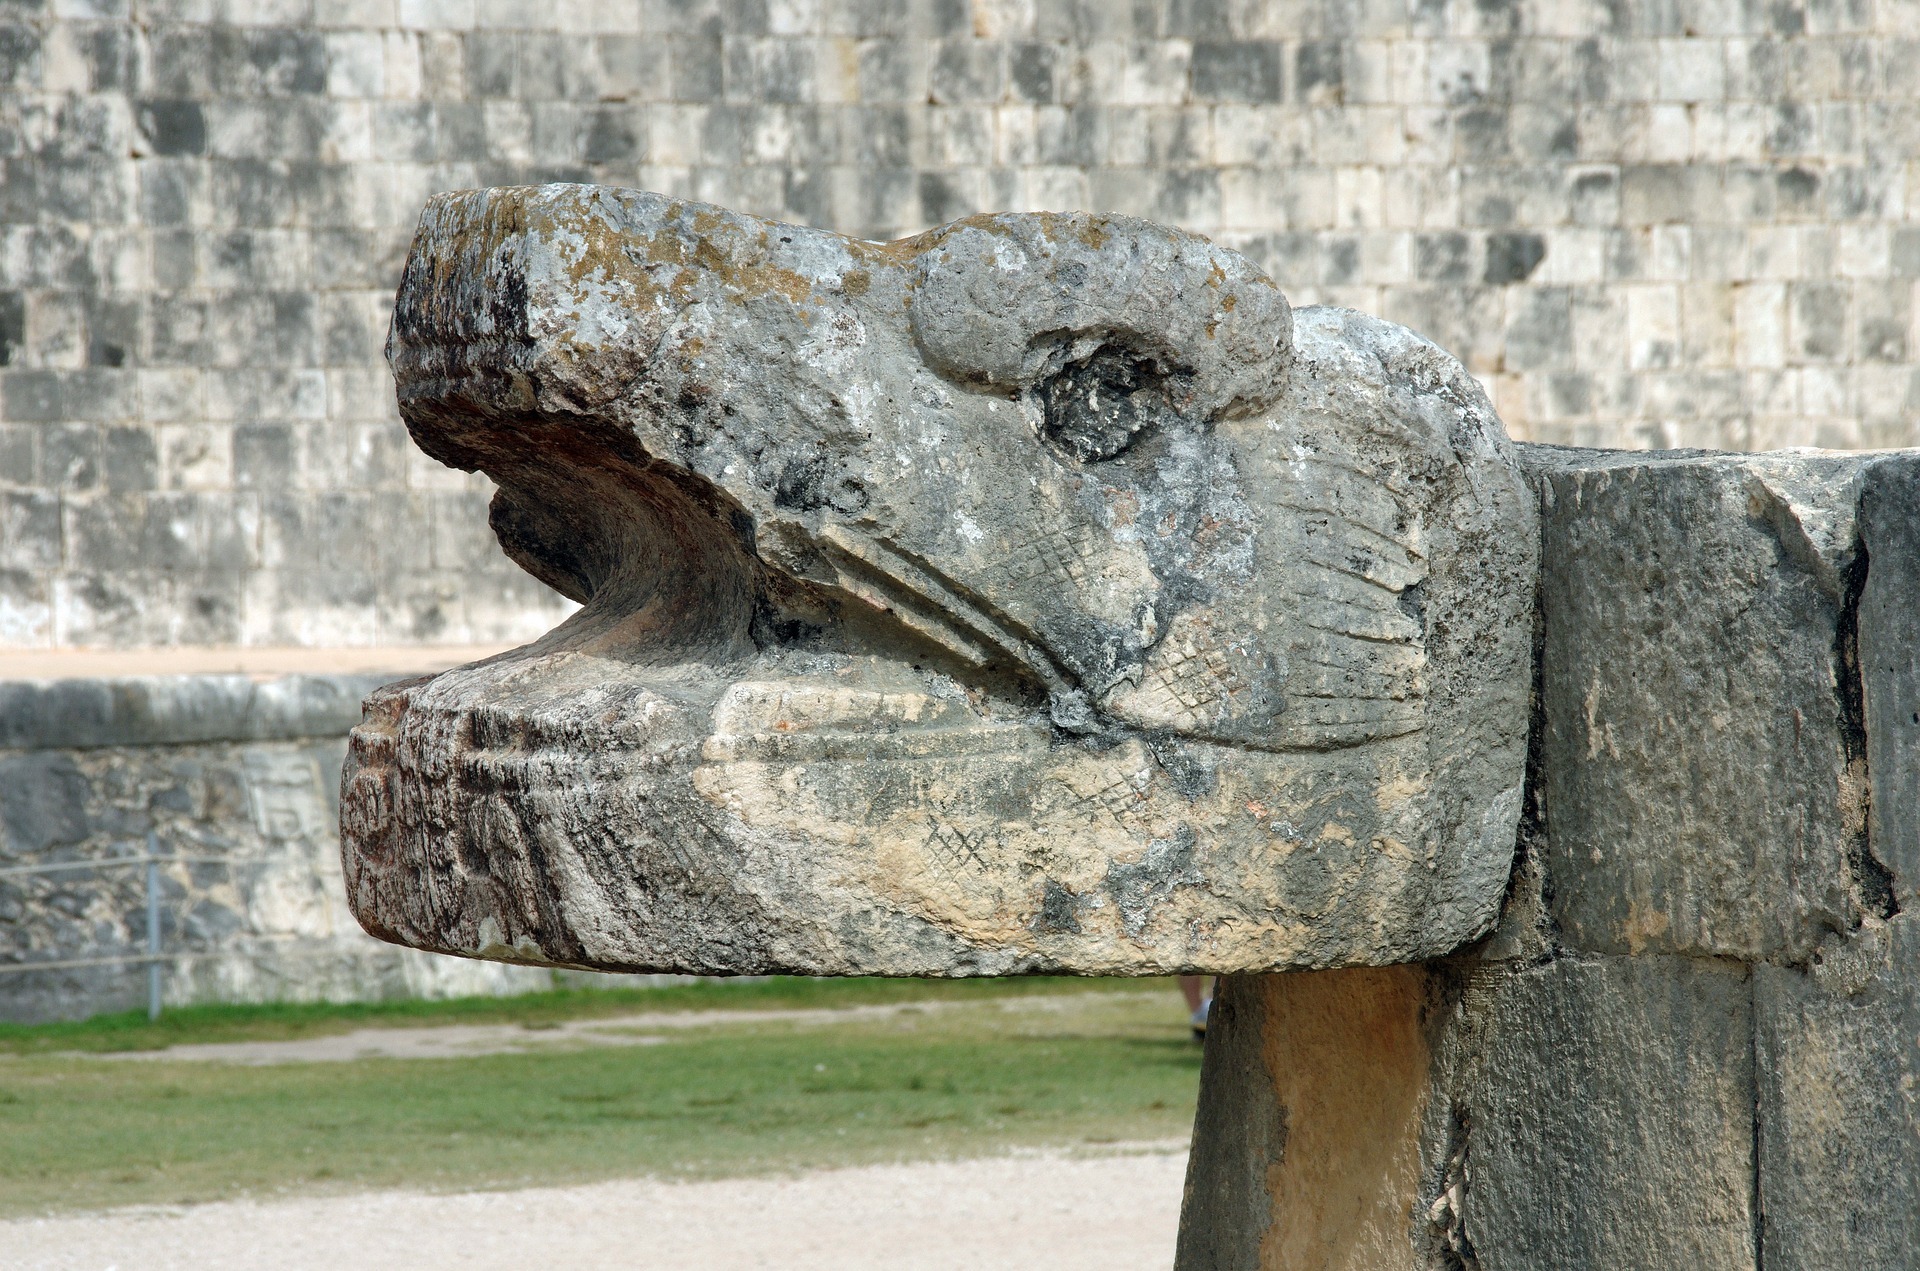 Mayan Serpent Sculpture